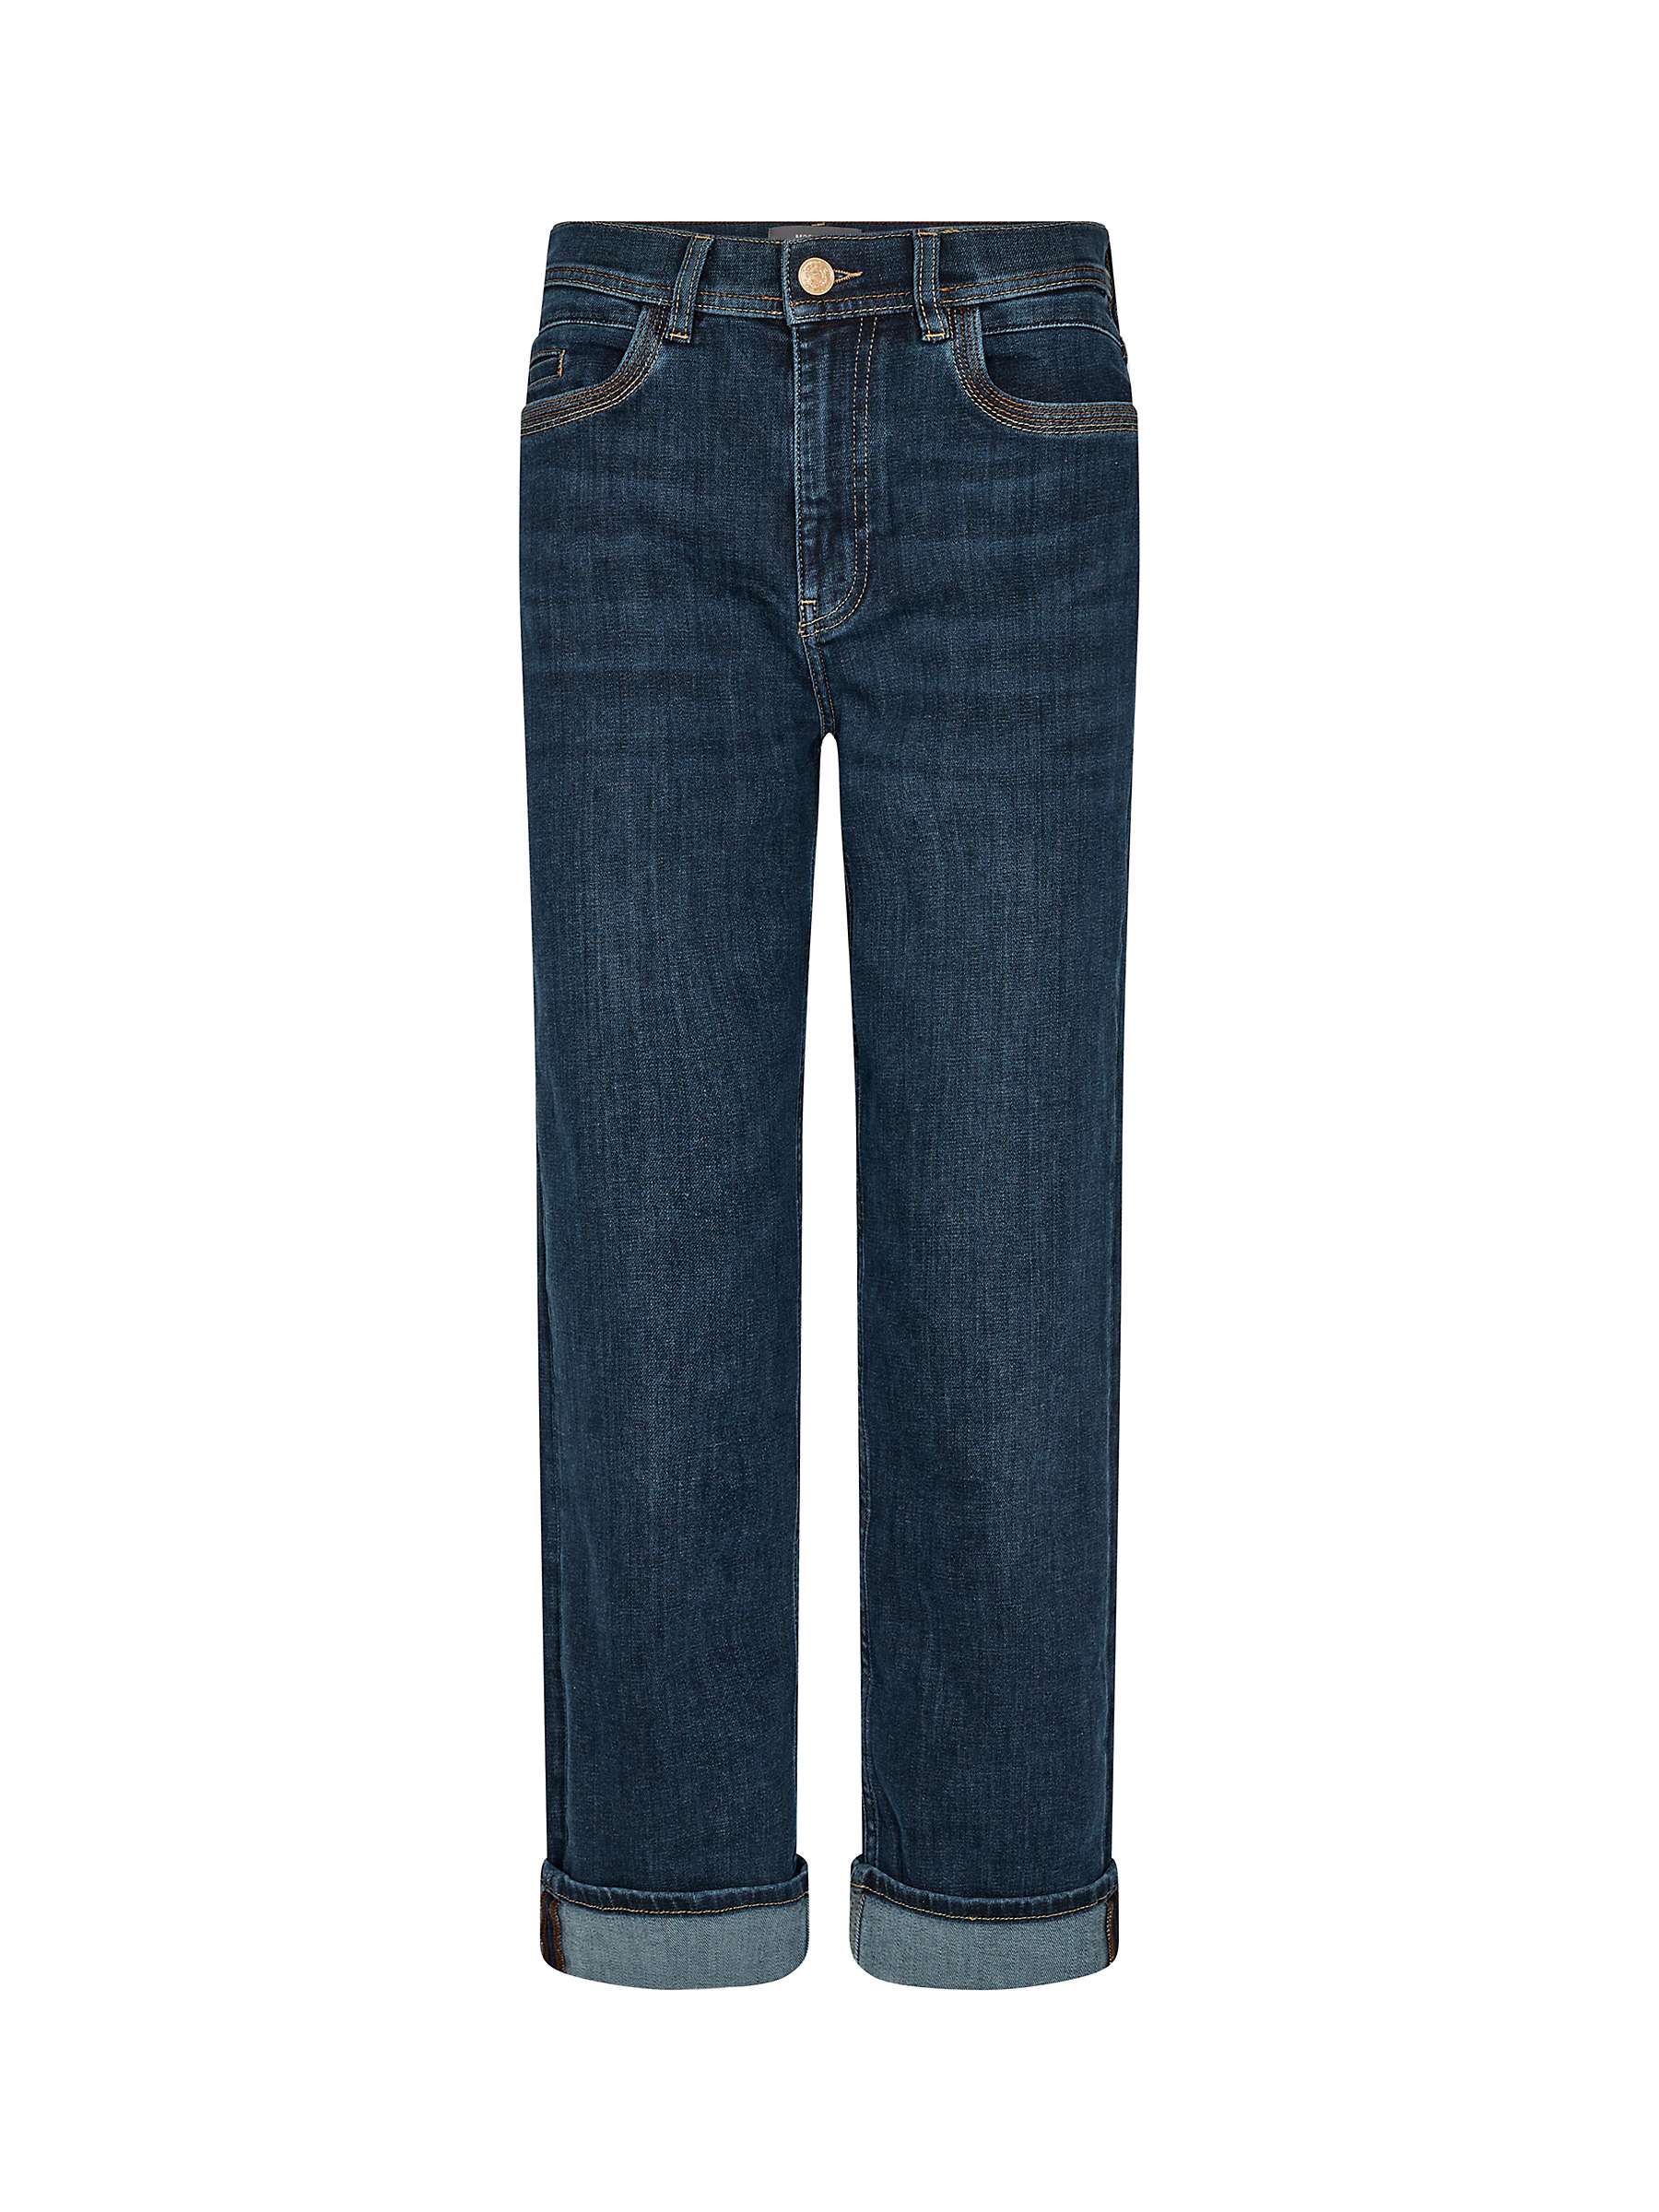 Buy MOS MOSH Verti Nion Boyfriend Fit Jeans, Dark Blue Online at johnlewis.com